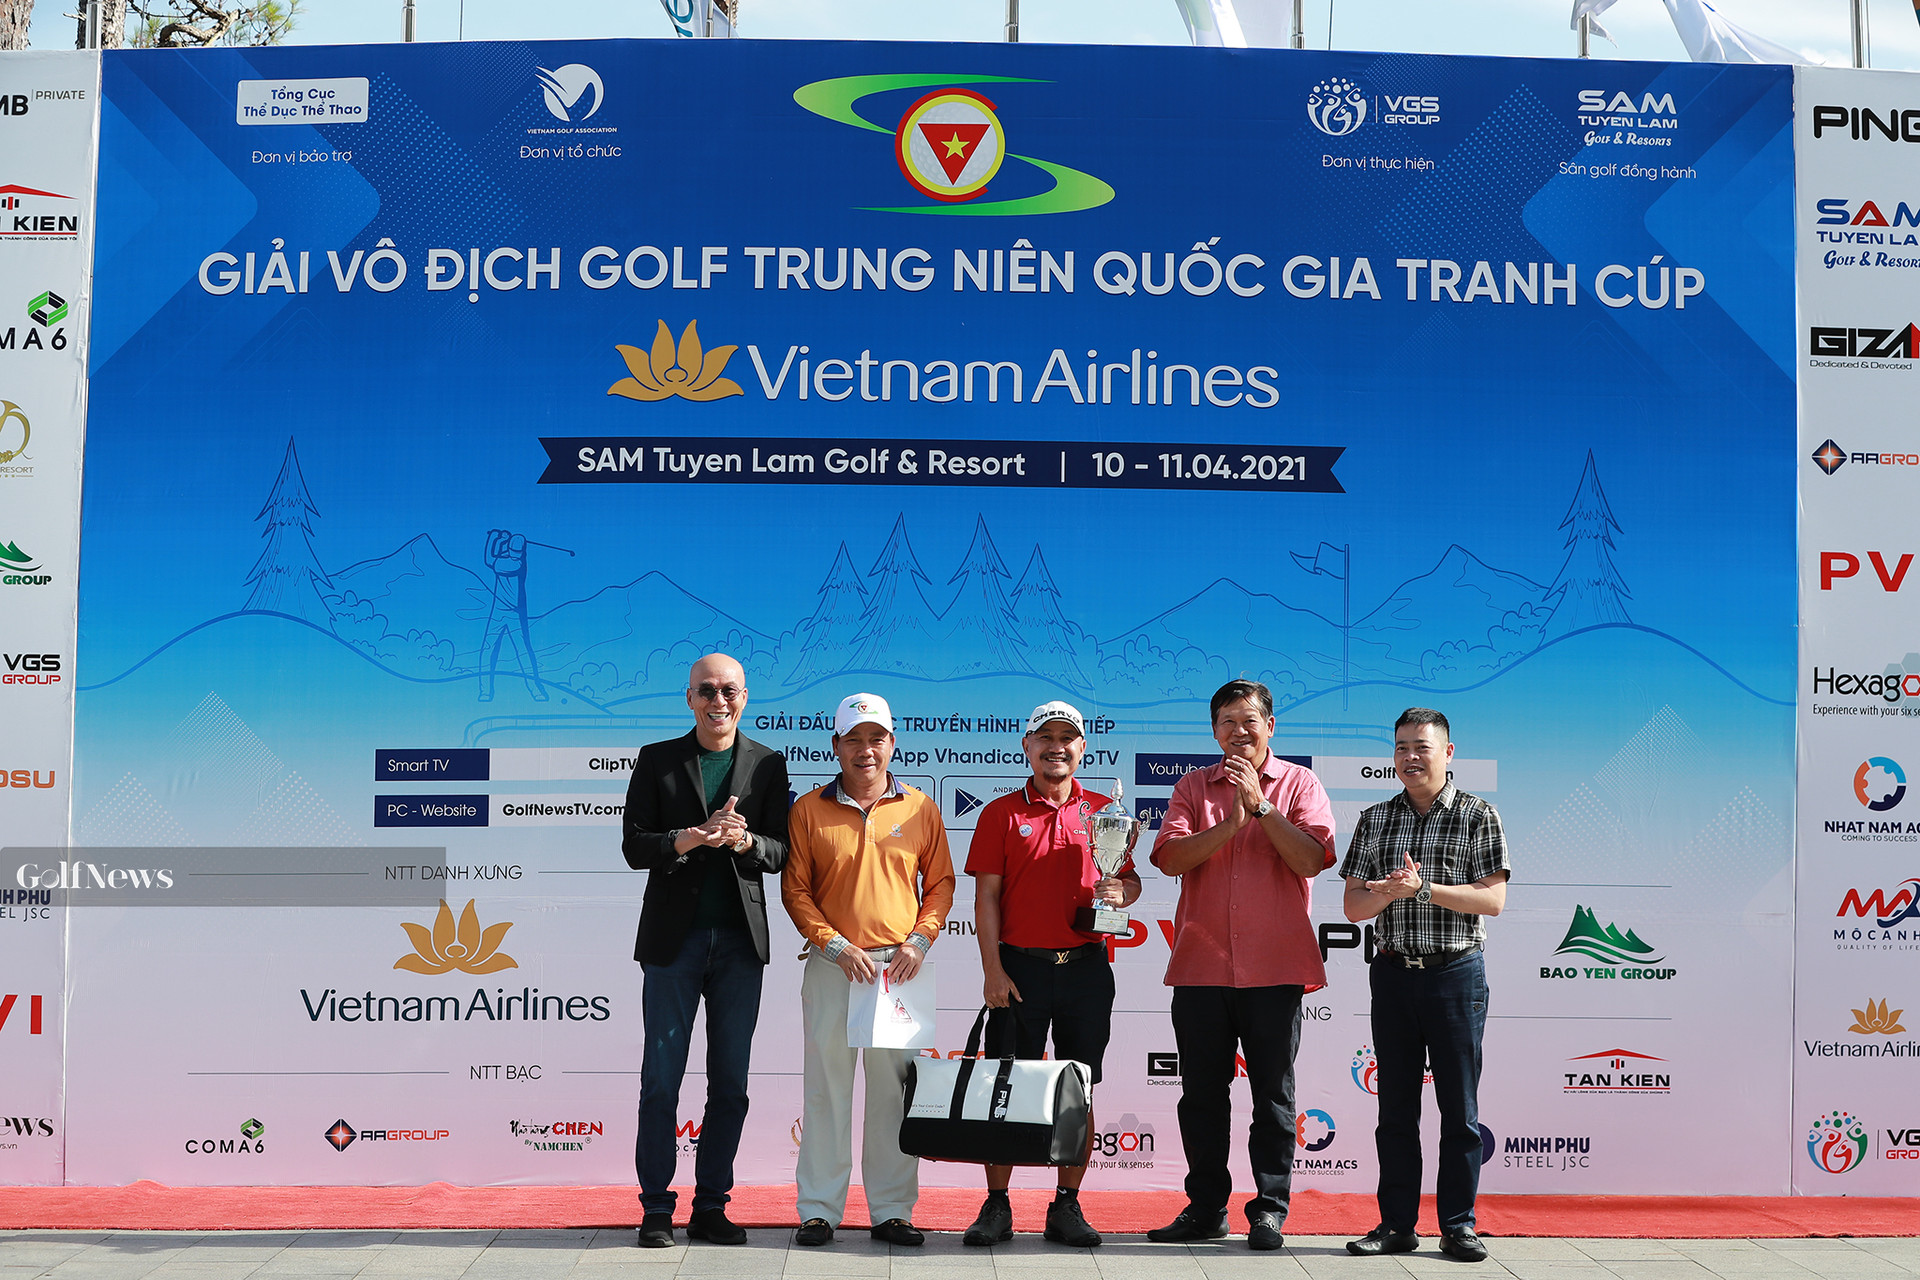 Kết quả chung cuộc giải Vô địch golf Trung niên Quốc gia tranh cúp Vietnam Airlines - Ảnh 1.